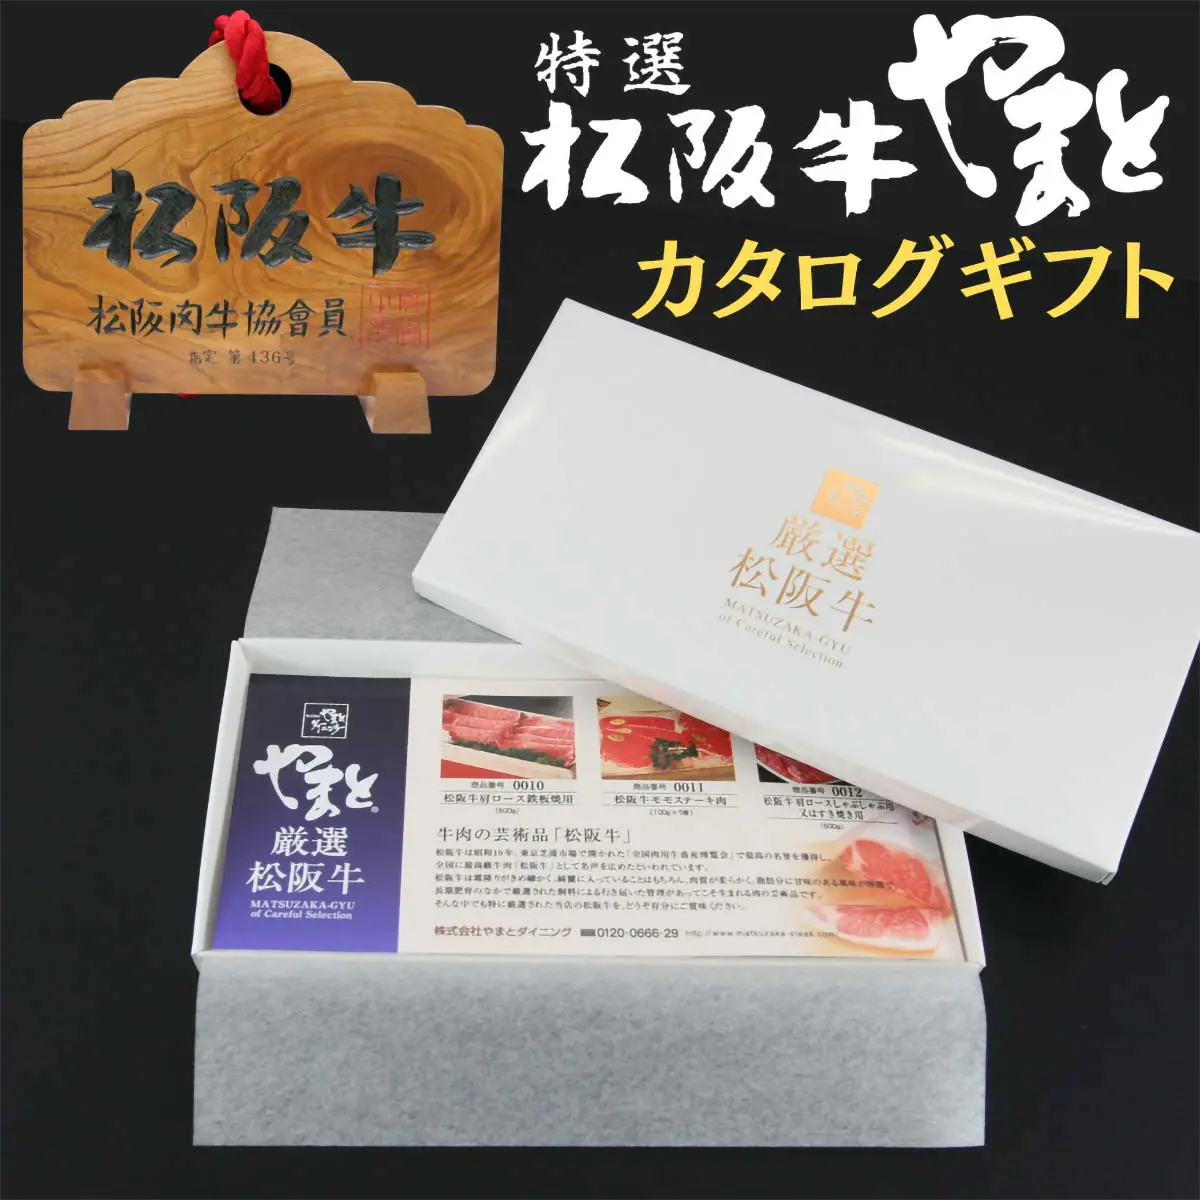 【結婚祝い】松阪牛お肉のギフト券Dタイプ